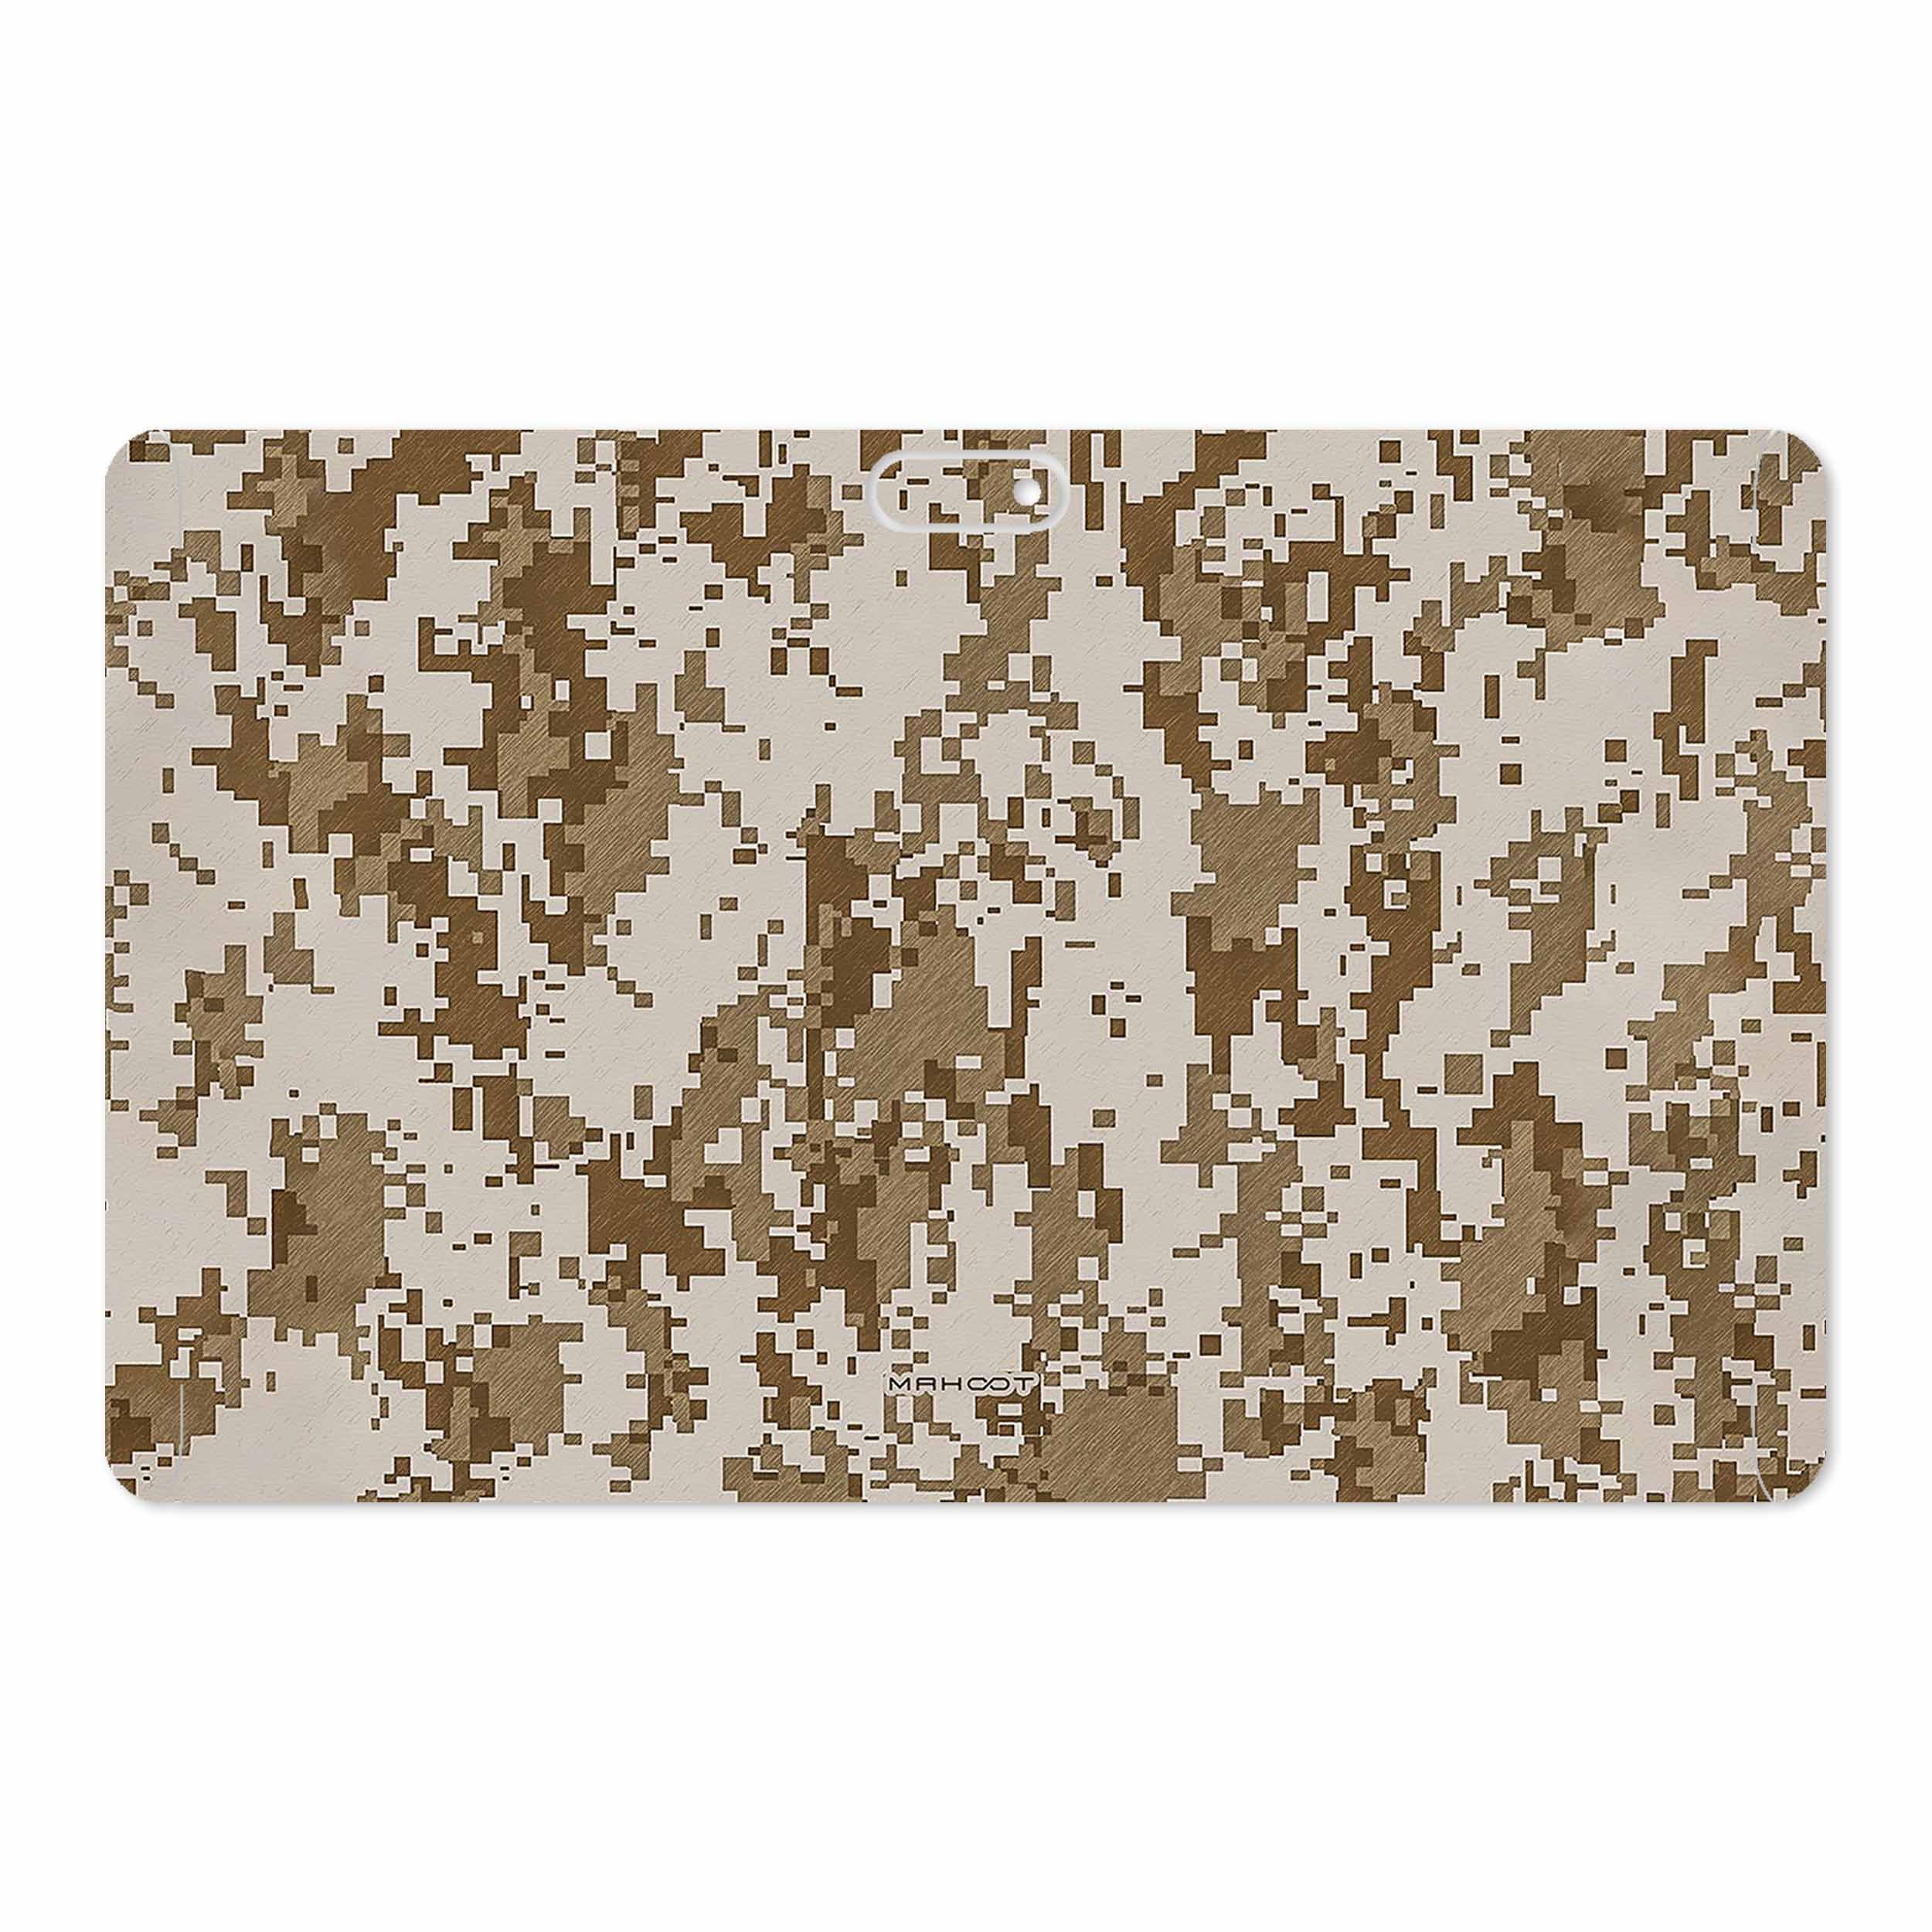 برچسب پوششی ماهوت مدل Army-Desert-Pixel مناسب برای تبلت جی ال ایکس W11 Plus